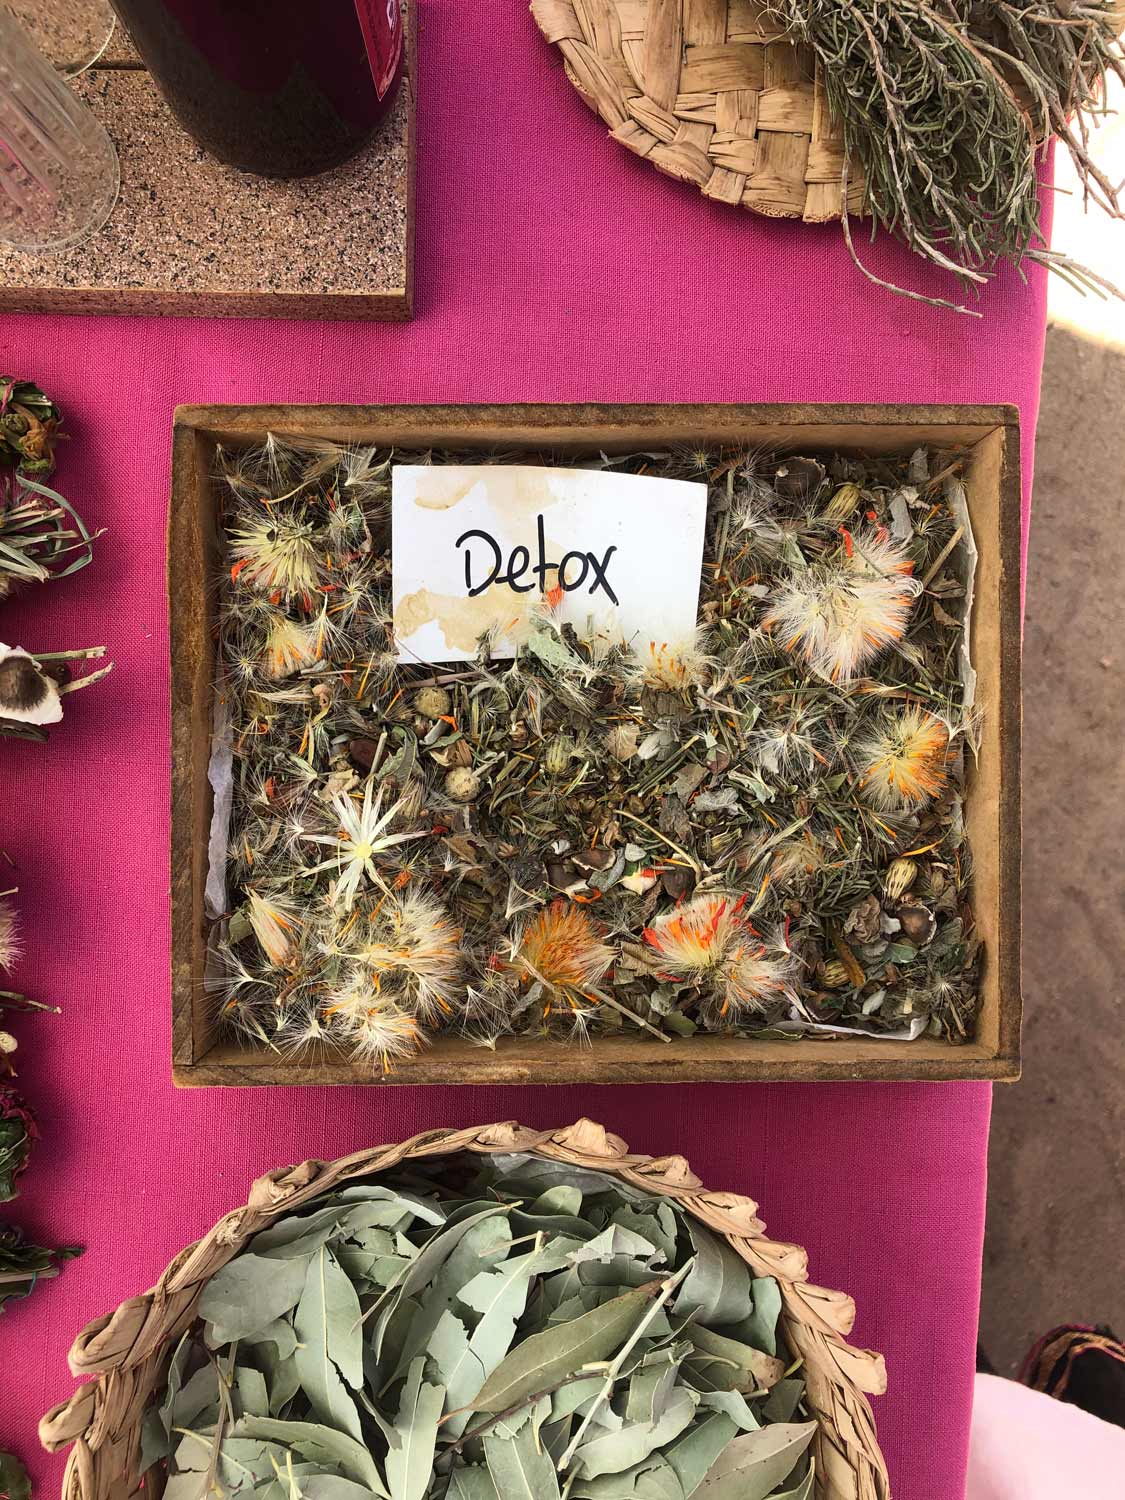 Detox herbs at Cerritos Farmers Market. 